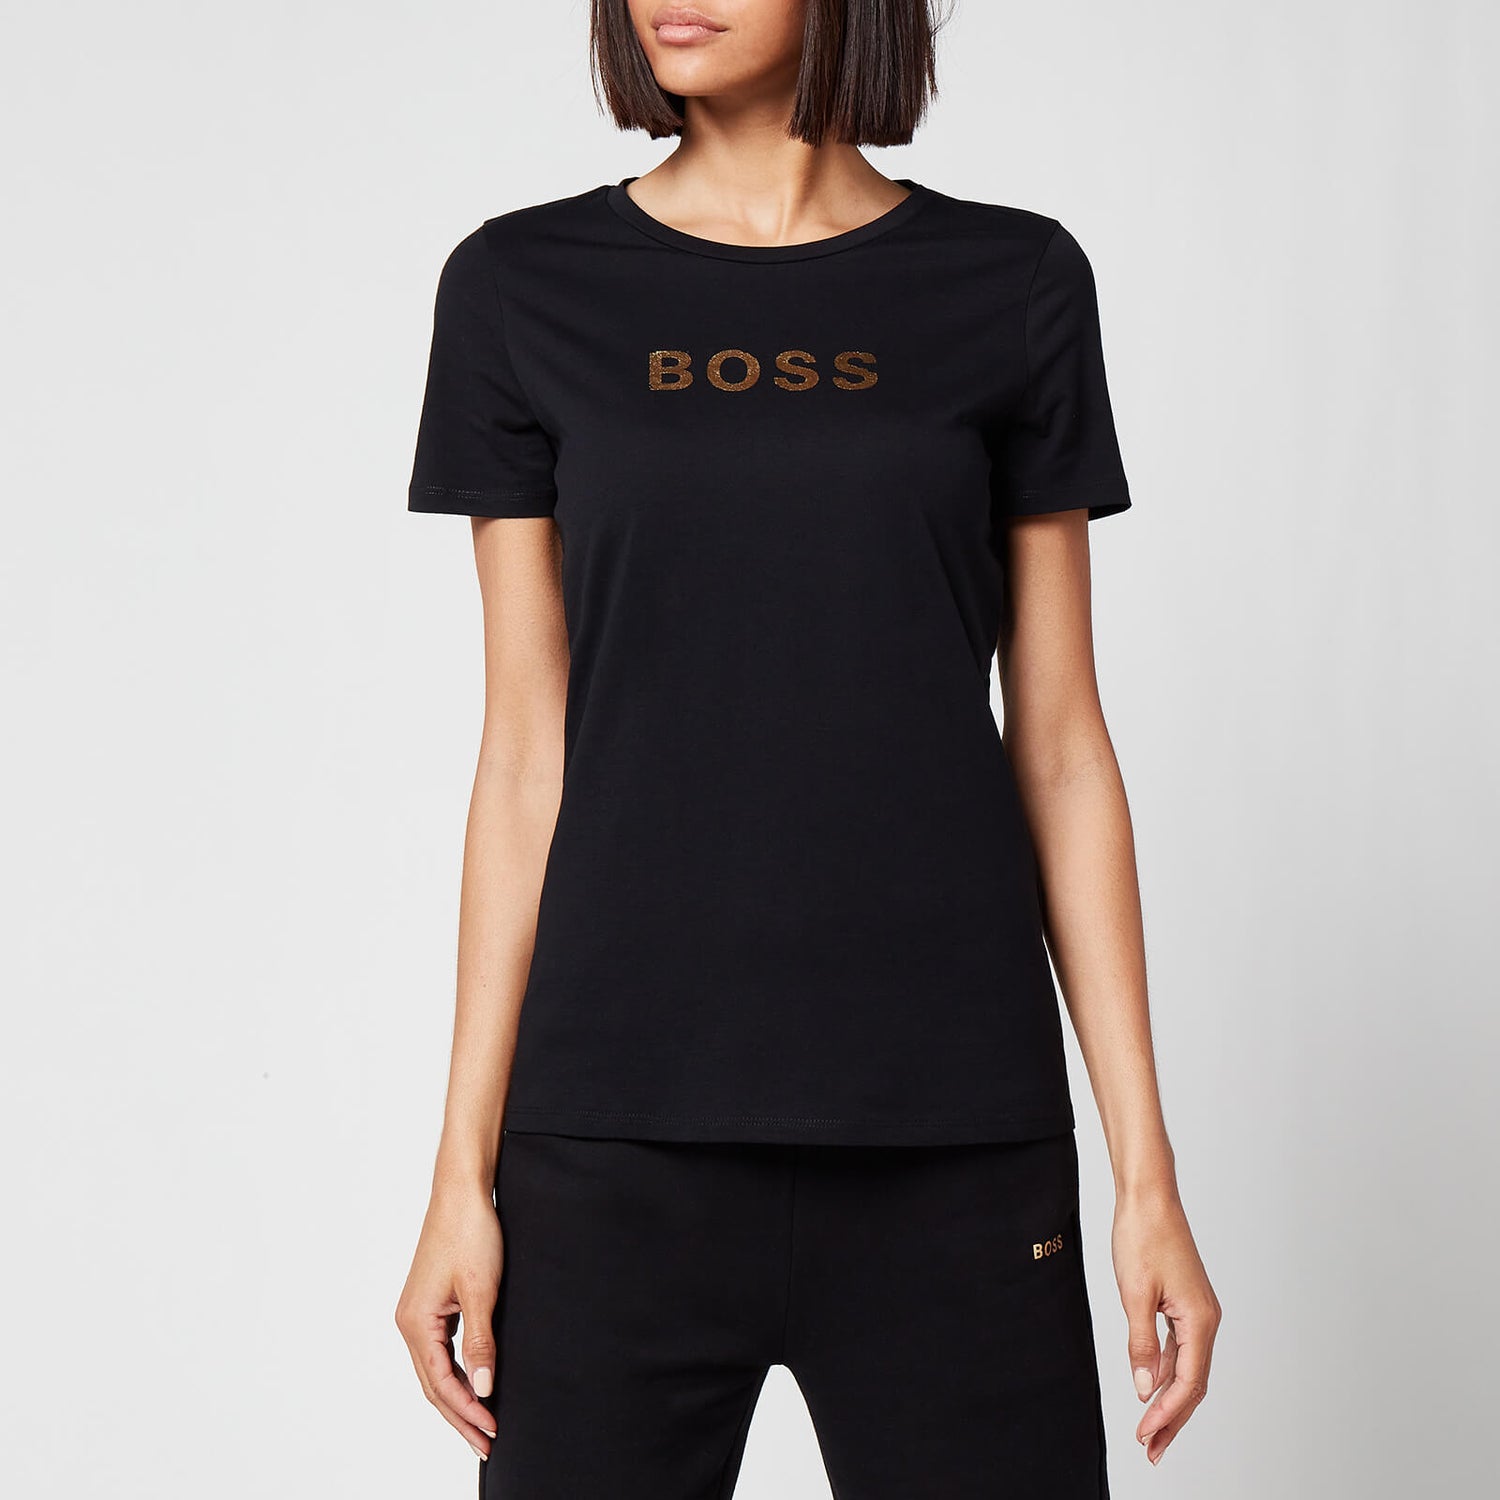 BOSS Women's Elogo Gold T-Shirt - Black